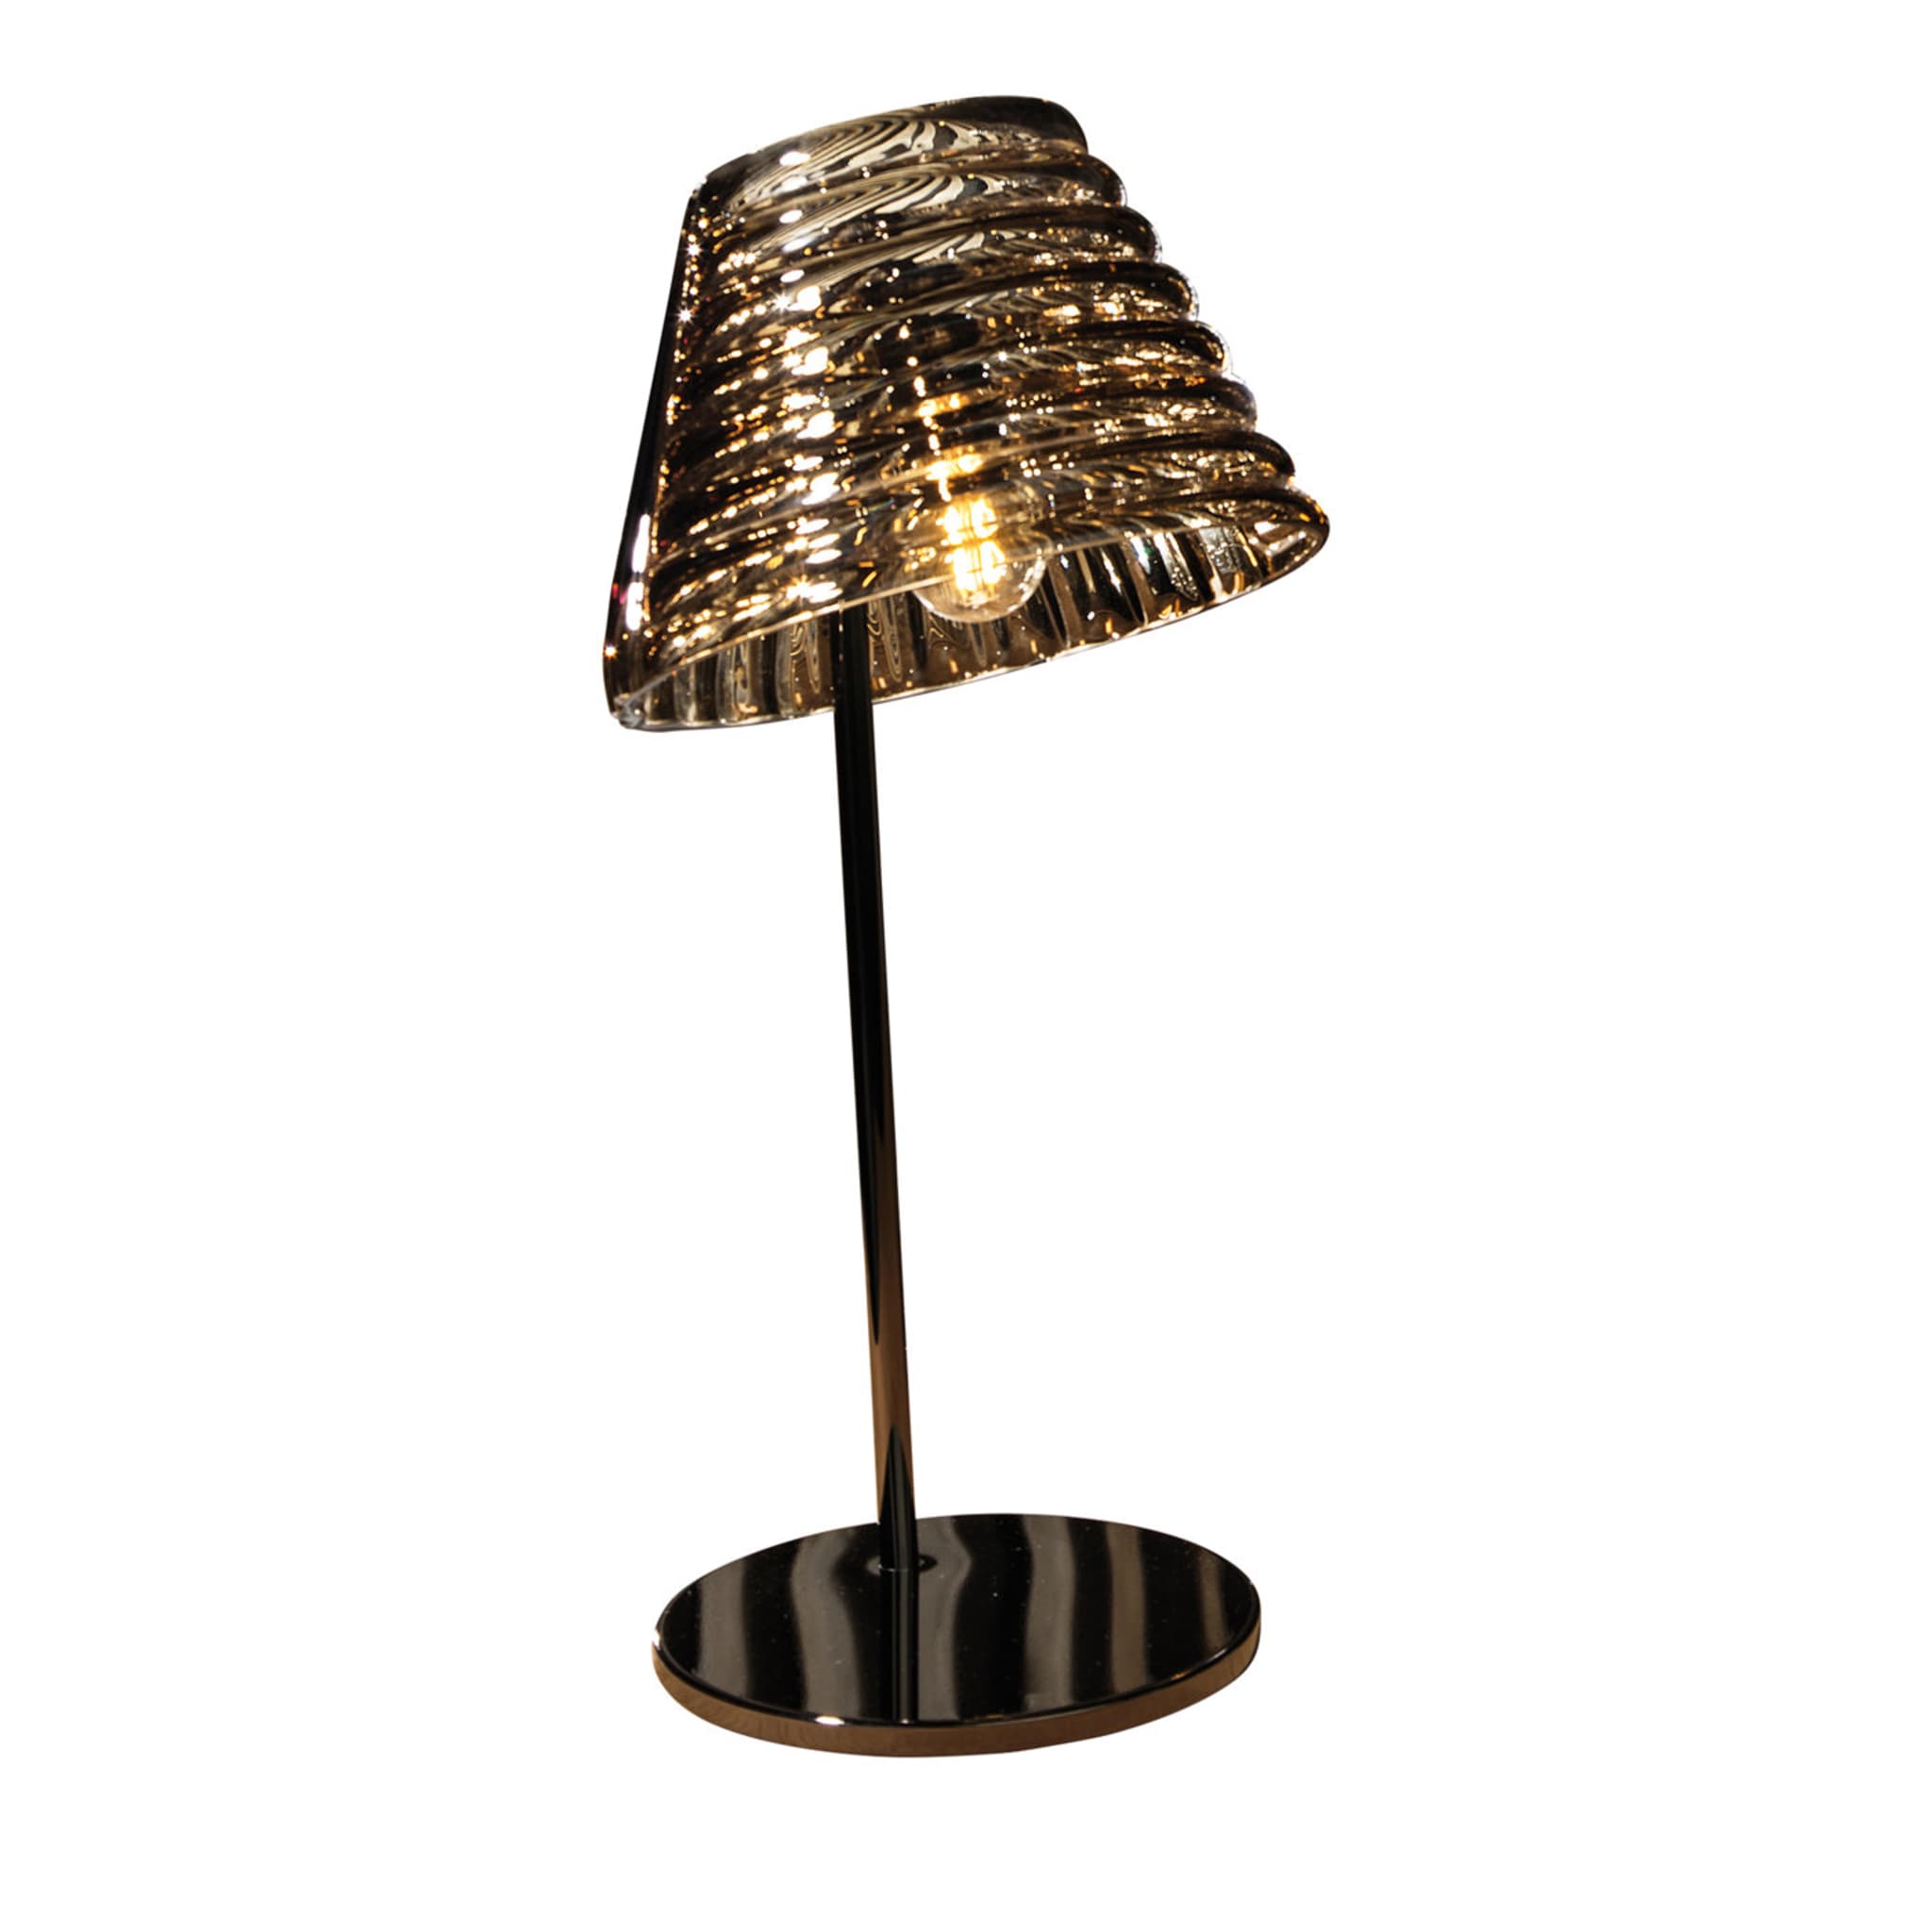 Profili Table Lamp by Giovanni Barbato - Main view